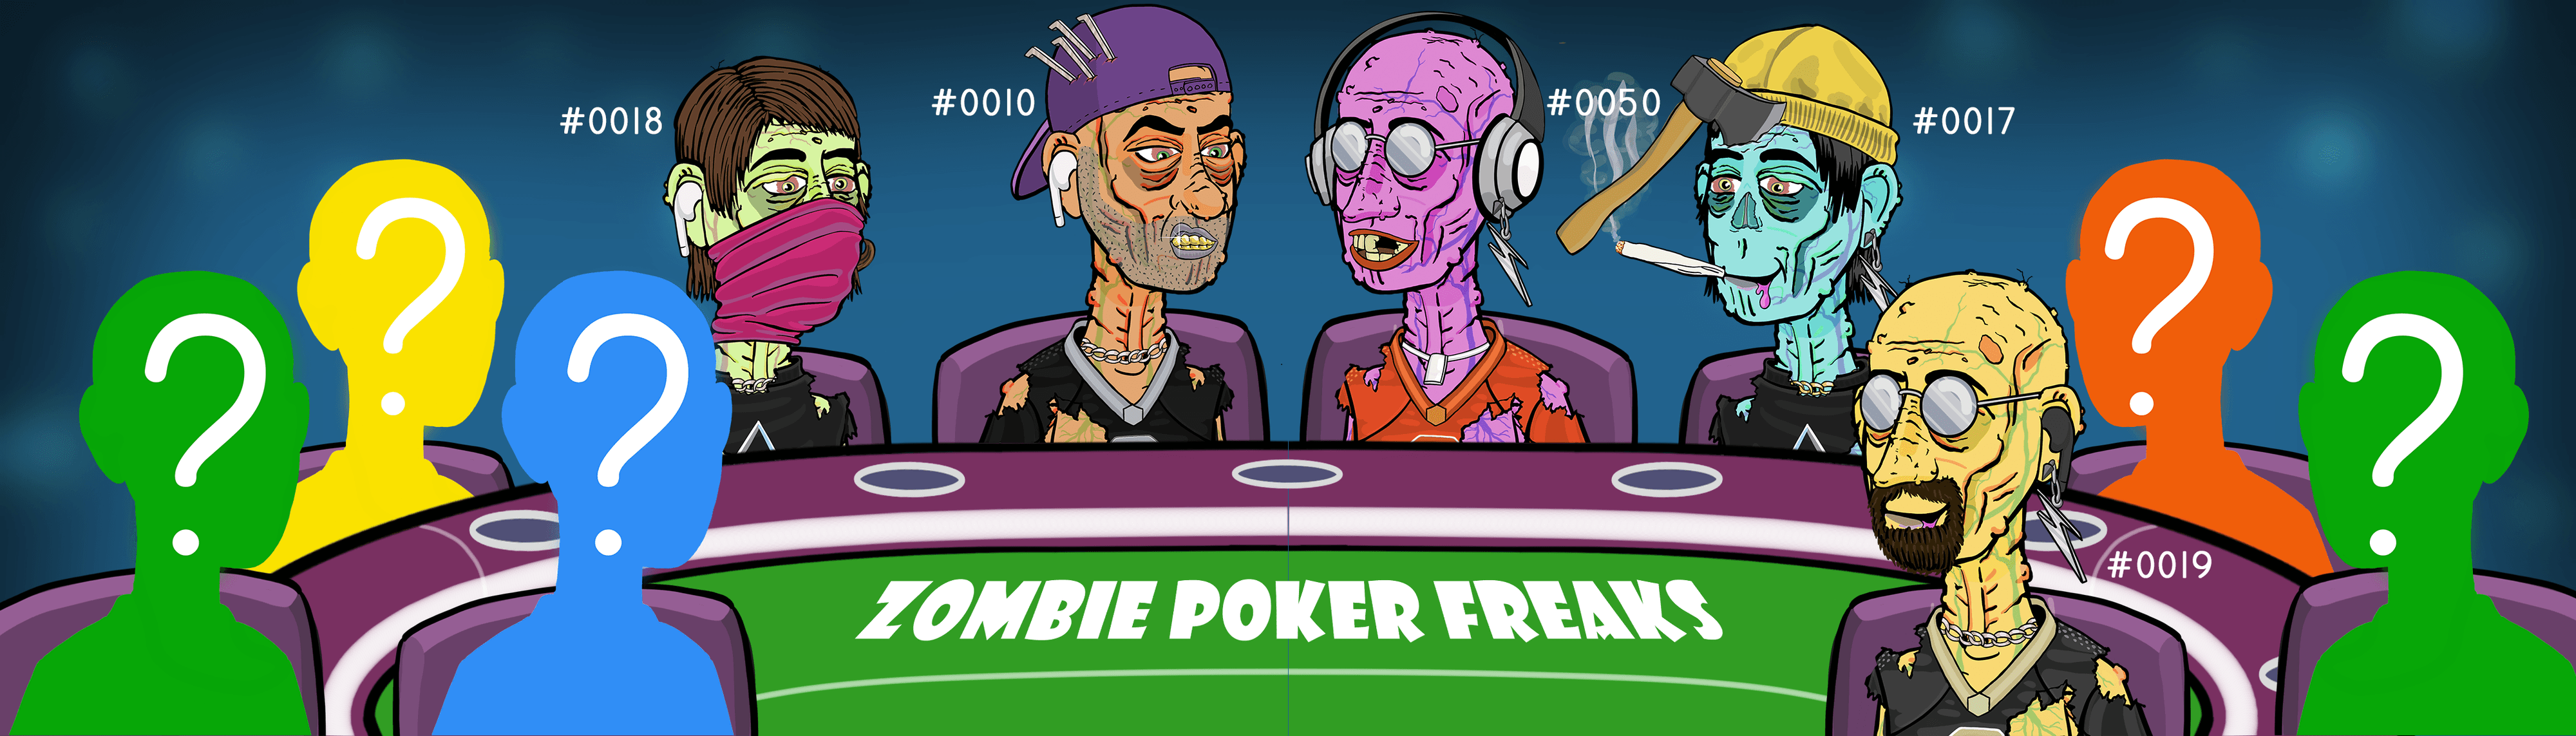 Zombie Poker Freaks Genesis